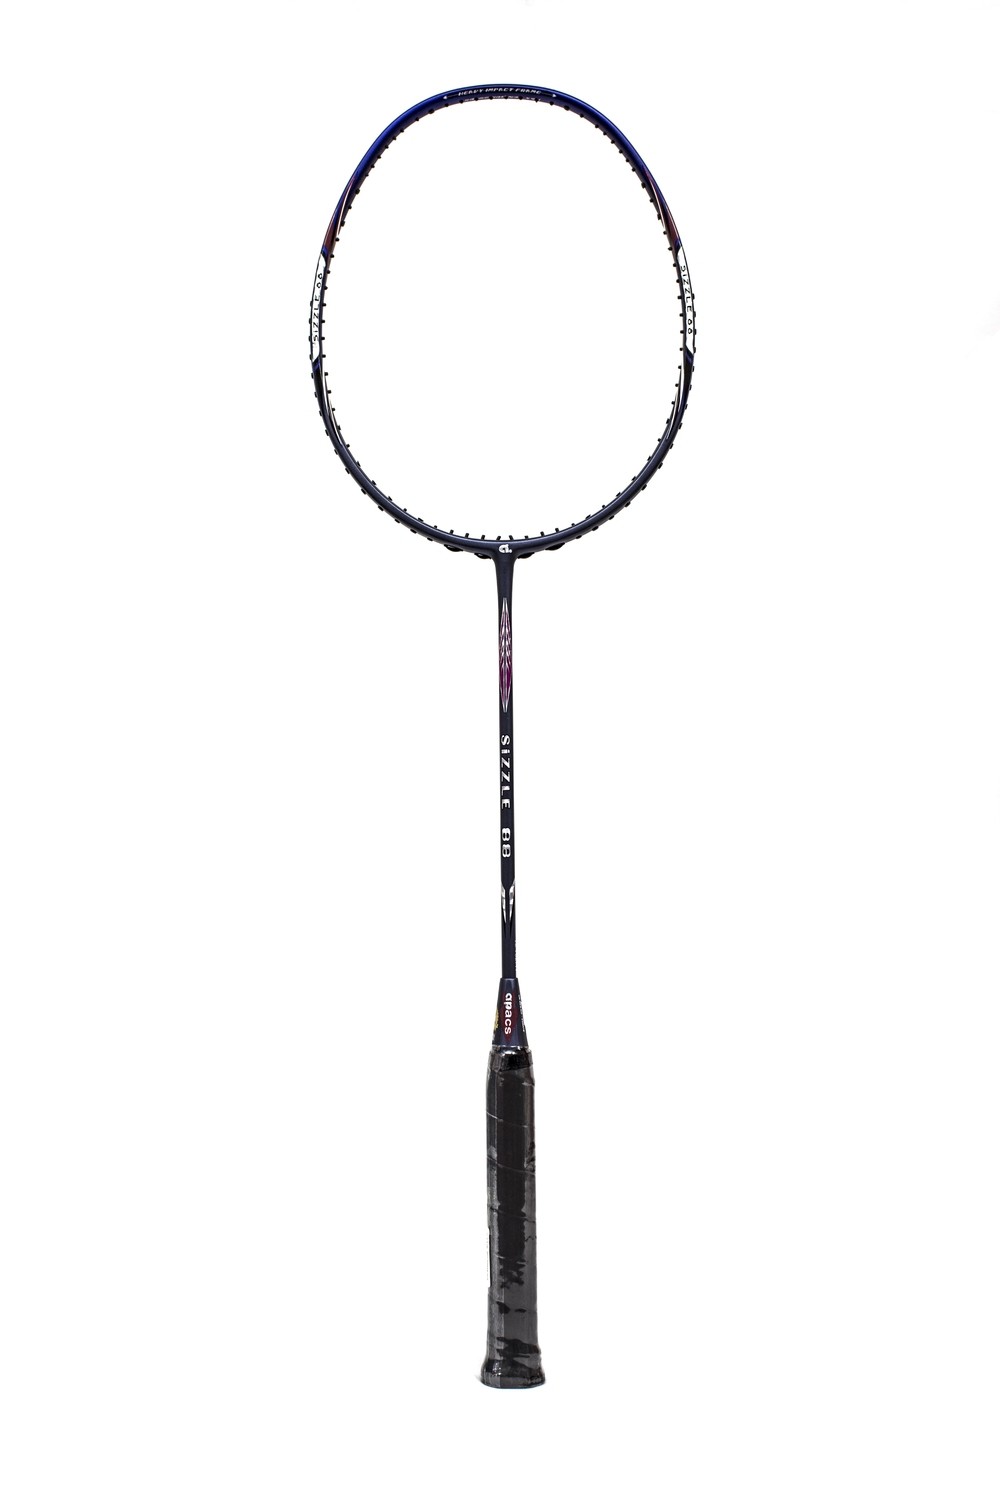 Apacs Sizzle 88 Badminton Racquet